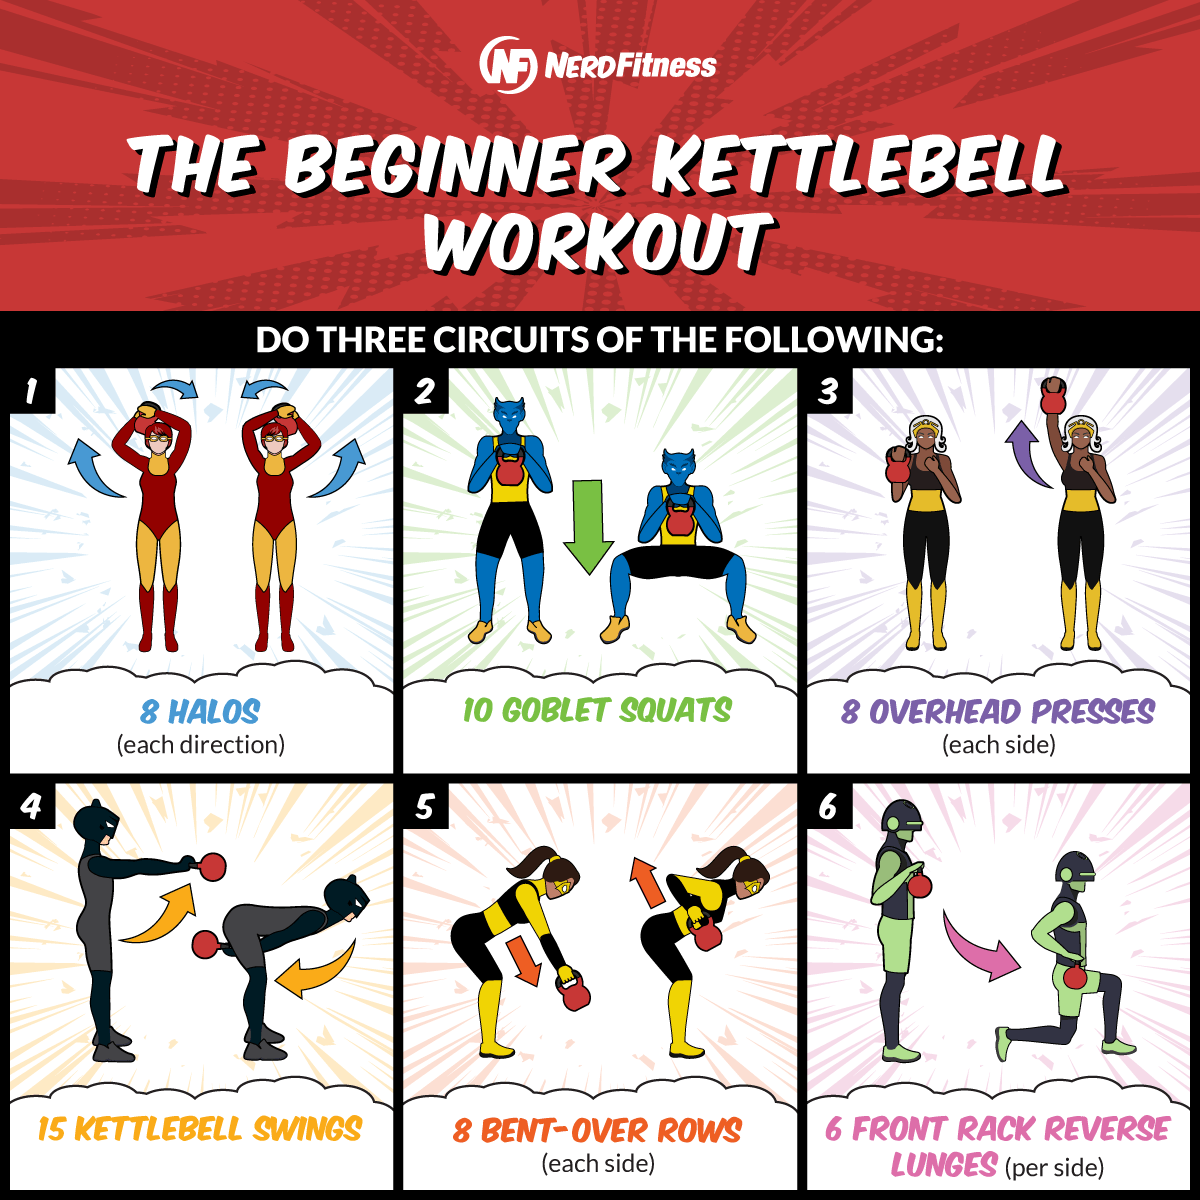 Cette infographie présente les 6 exercices nécessaires à l'entraînement Kettlebell pour débutants